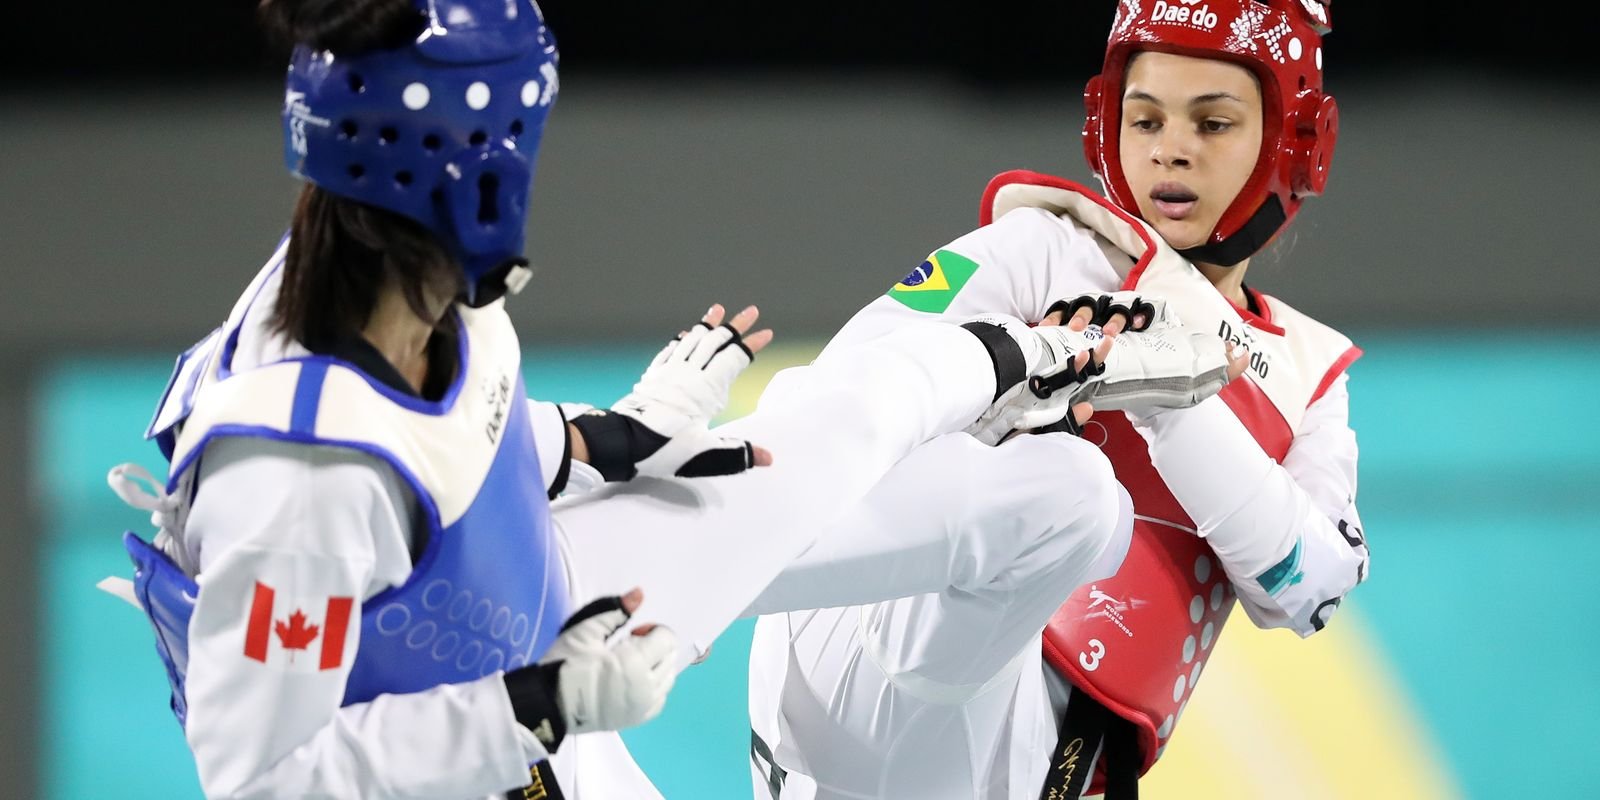 Maria Clara Pacheco conquista vaga olímpica para o Brasil no taekwondo